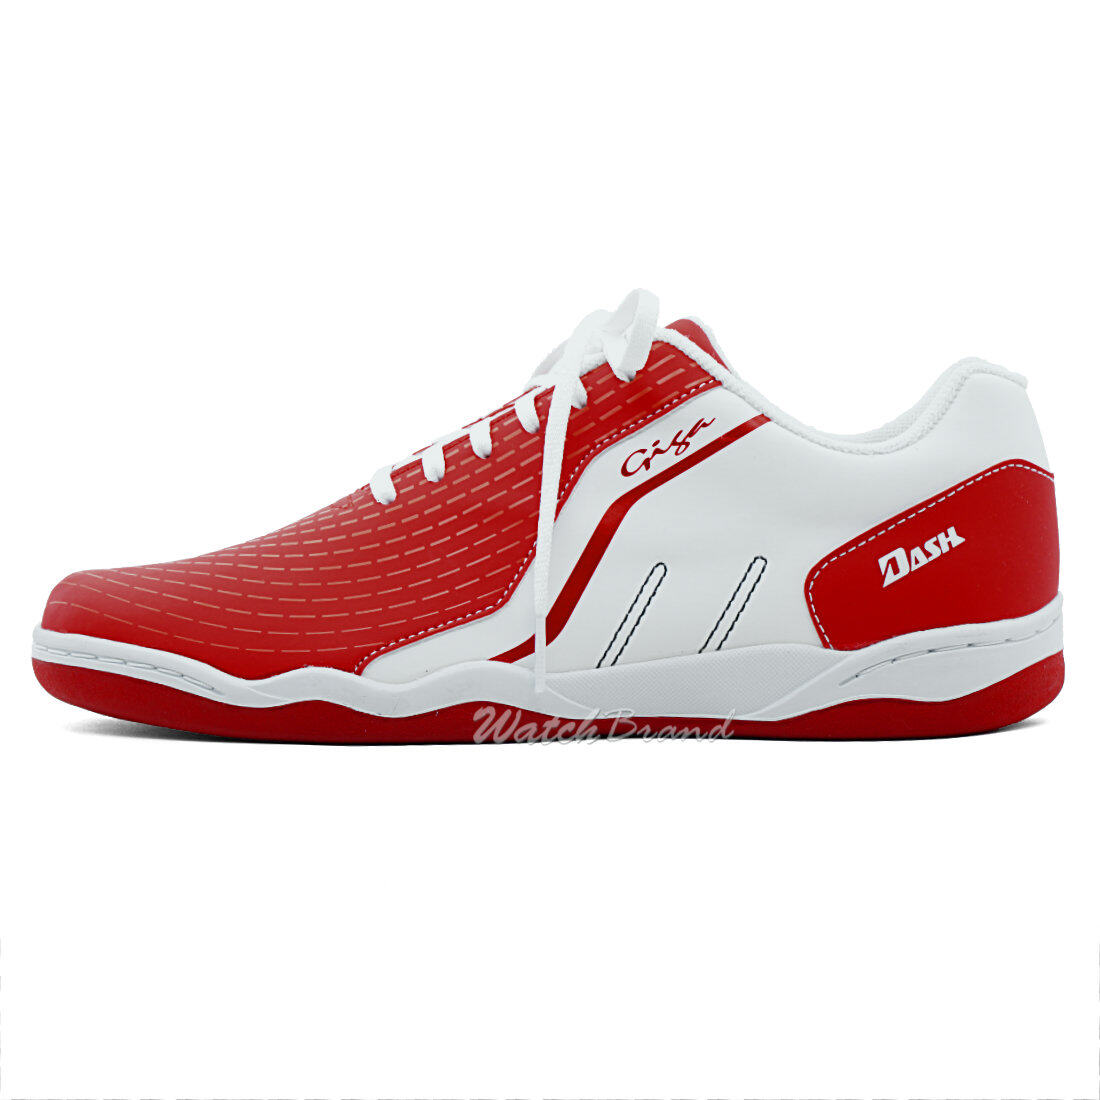 GIGA รองเท้าฟุตซอล รองเท้ากีฬา DASH รุ่น FG416 สีแดง